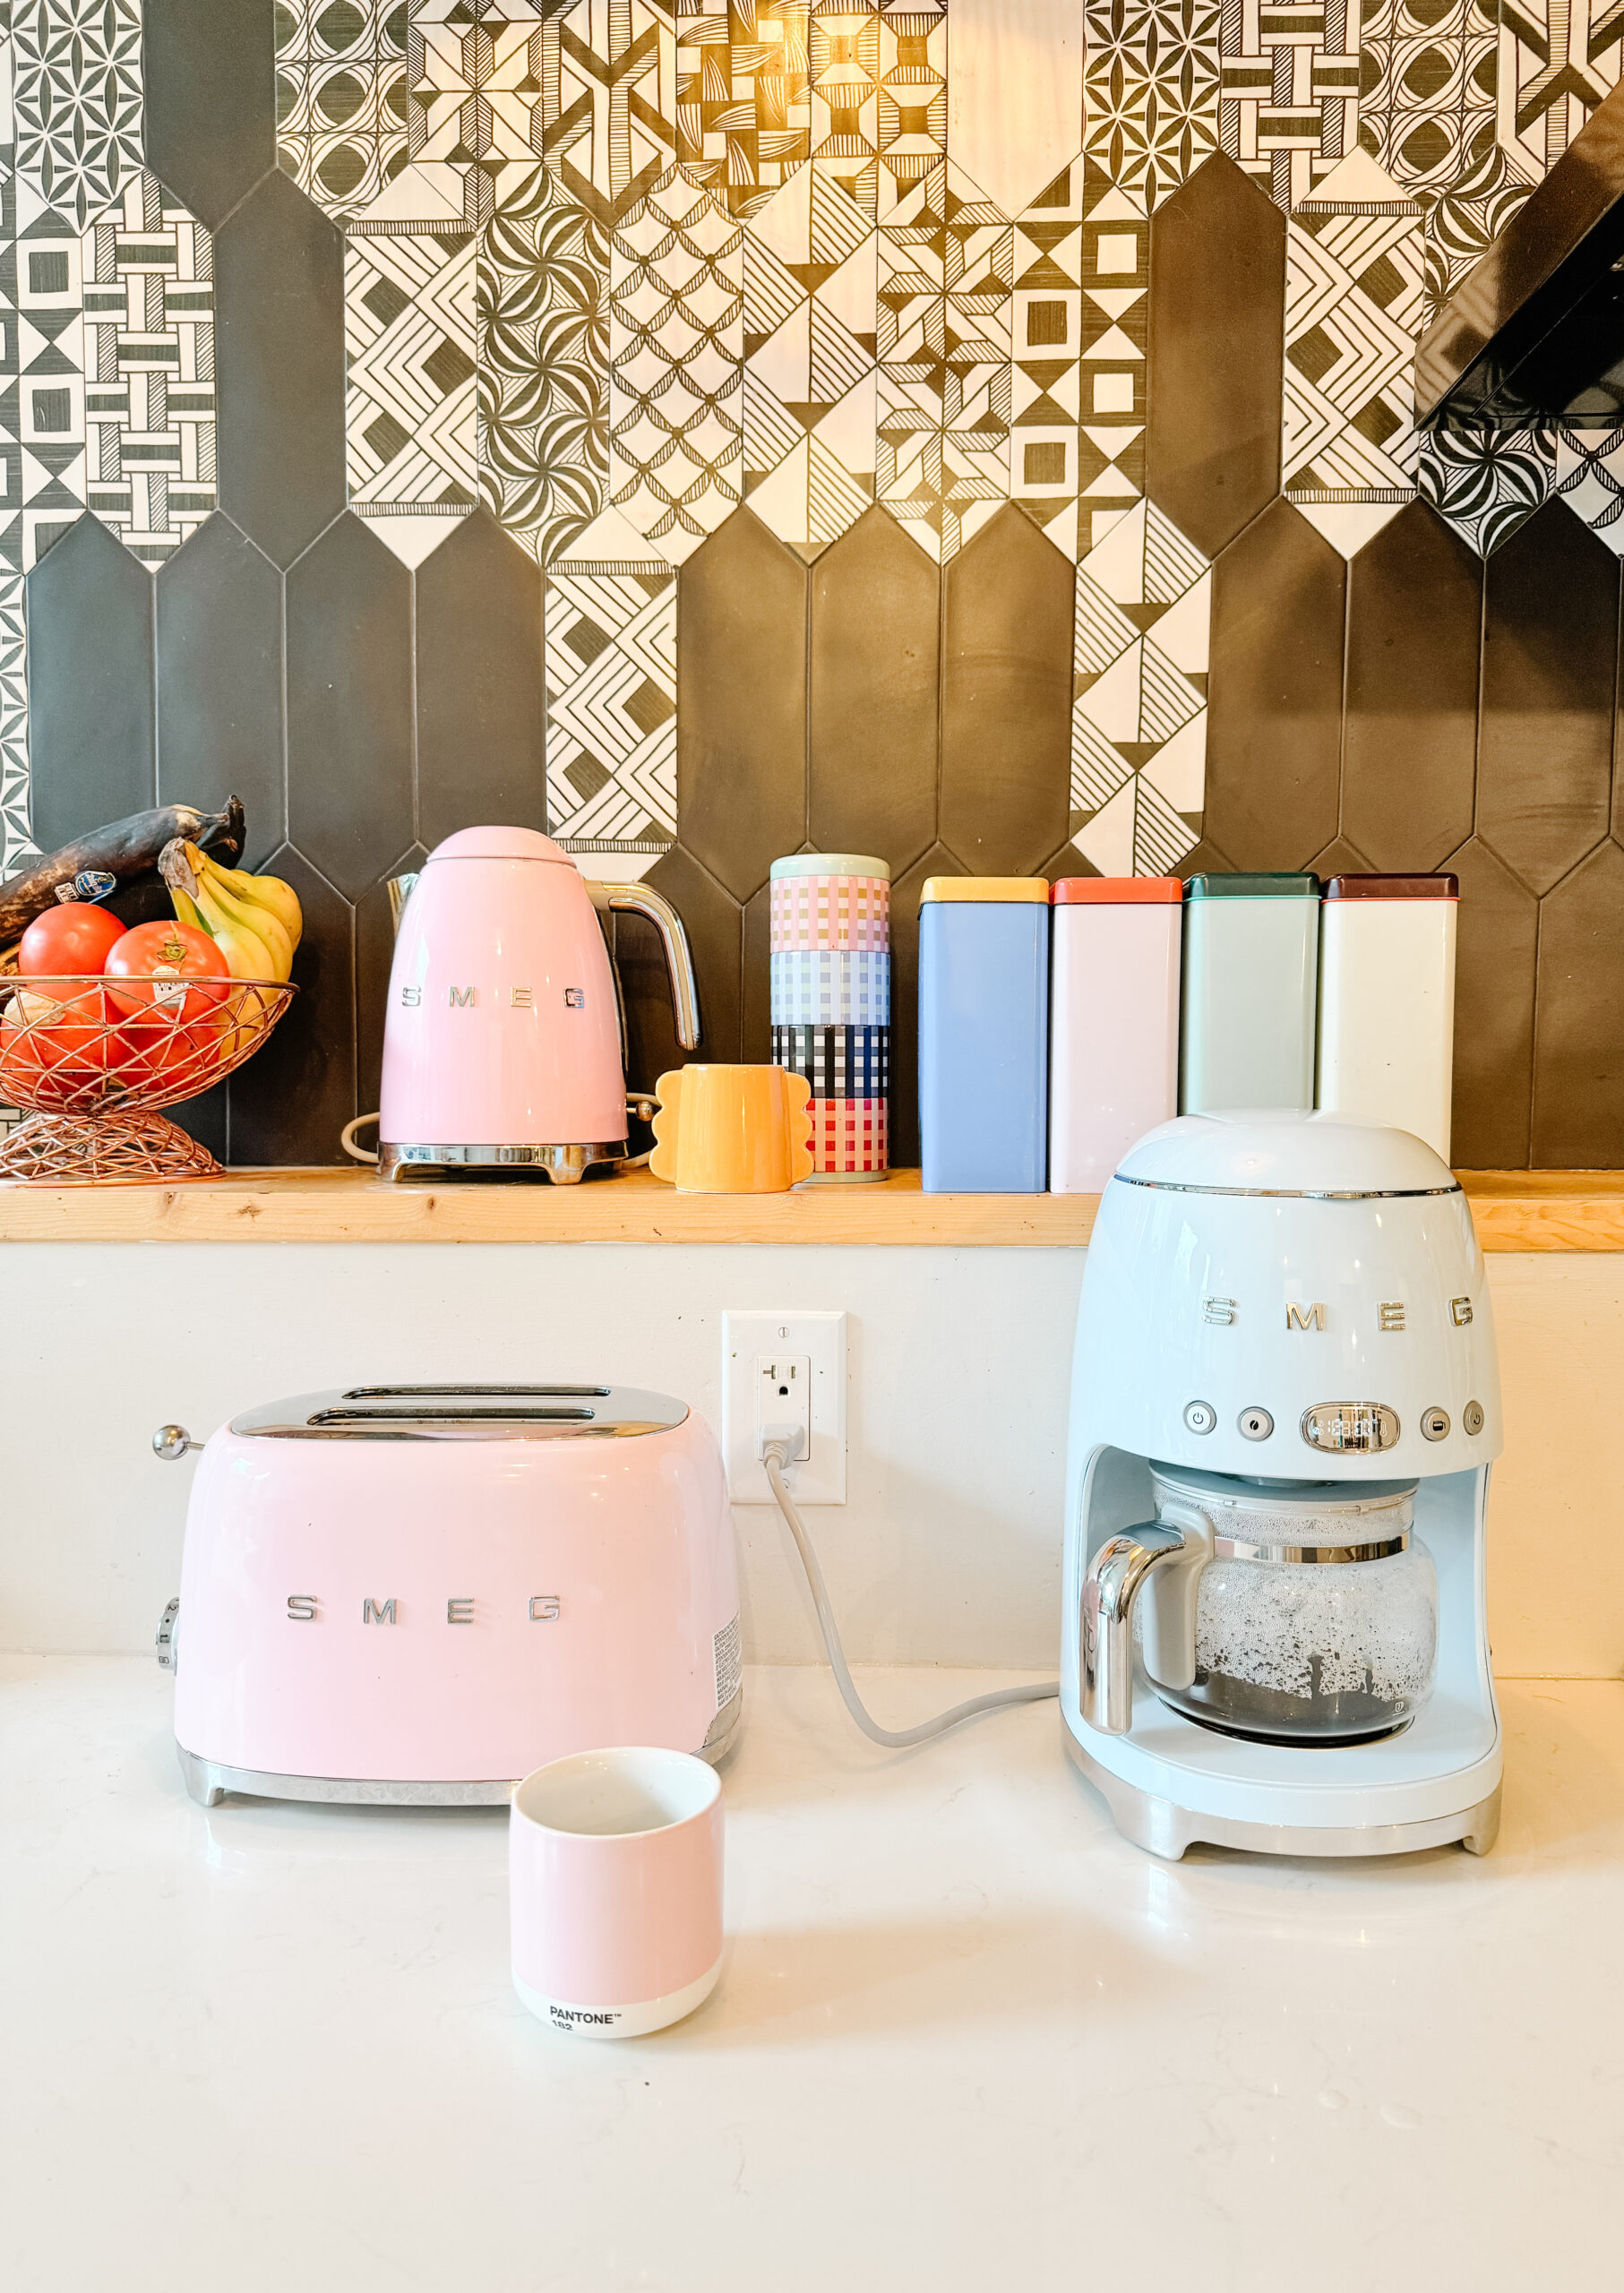 smeg toaster, smeg coffee drip machine on a kitchen counter with black and white tiles